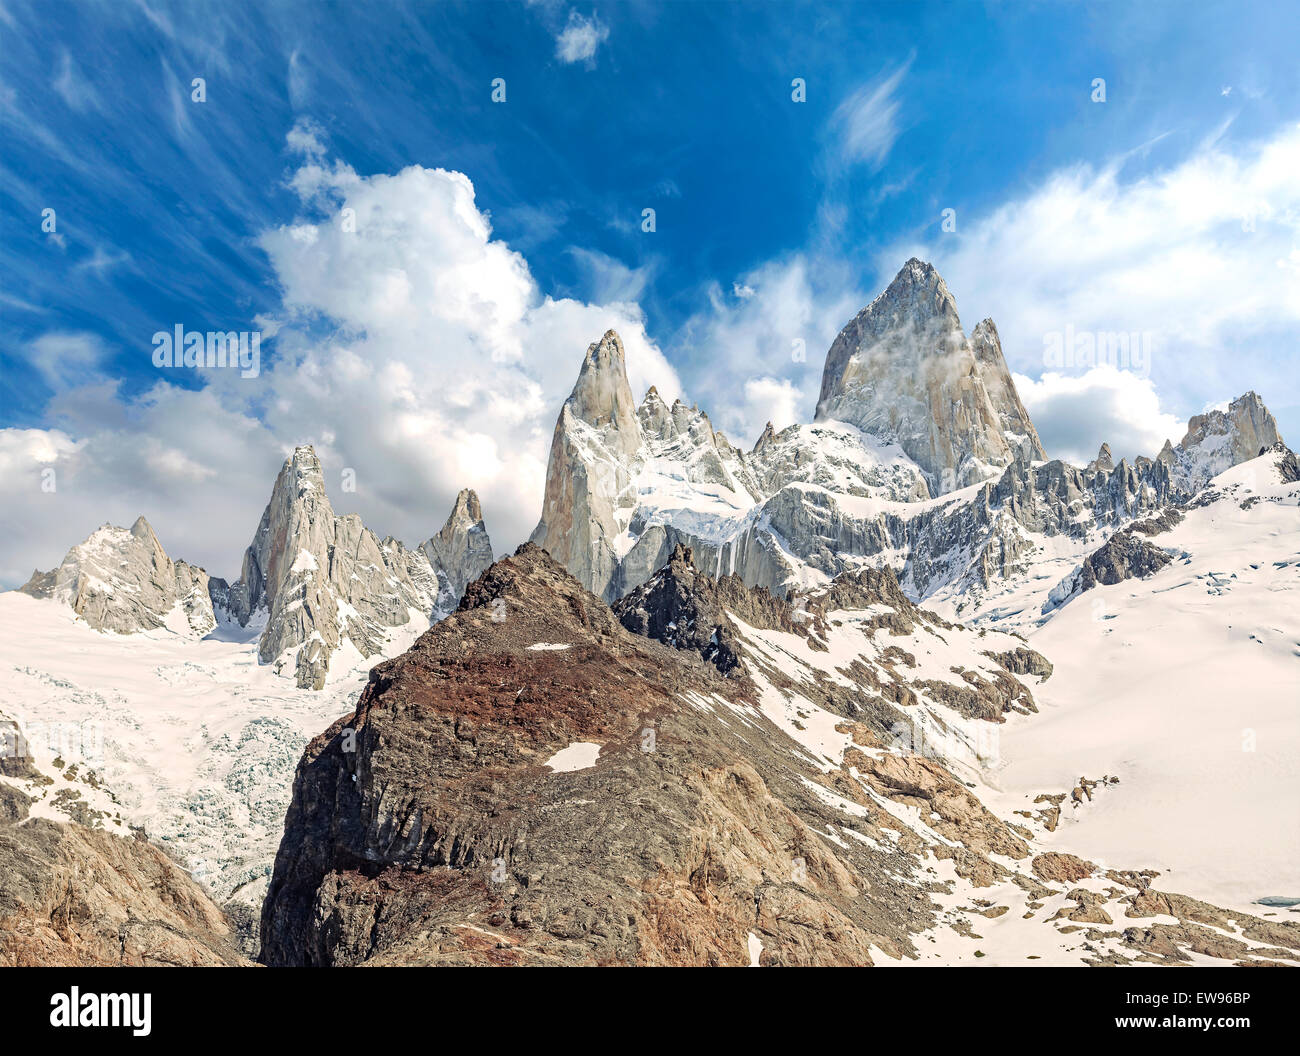 Fitz Roy Mountain Range in Patagonia, Argentina Stock Photo